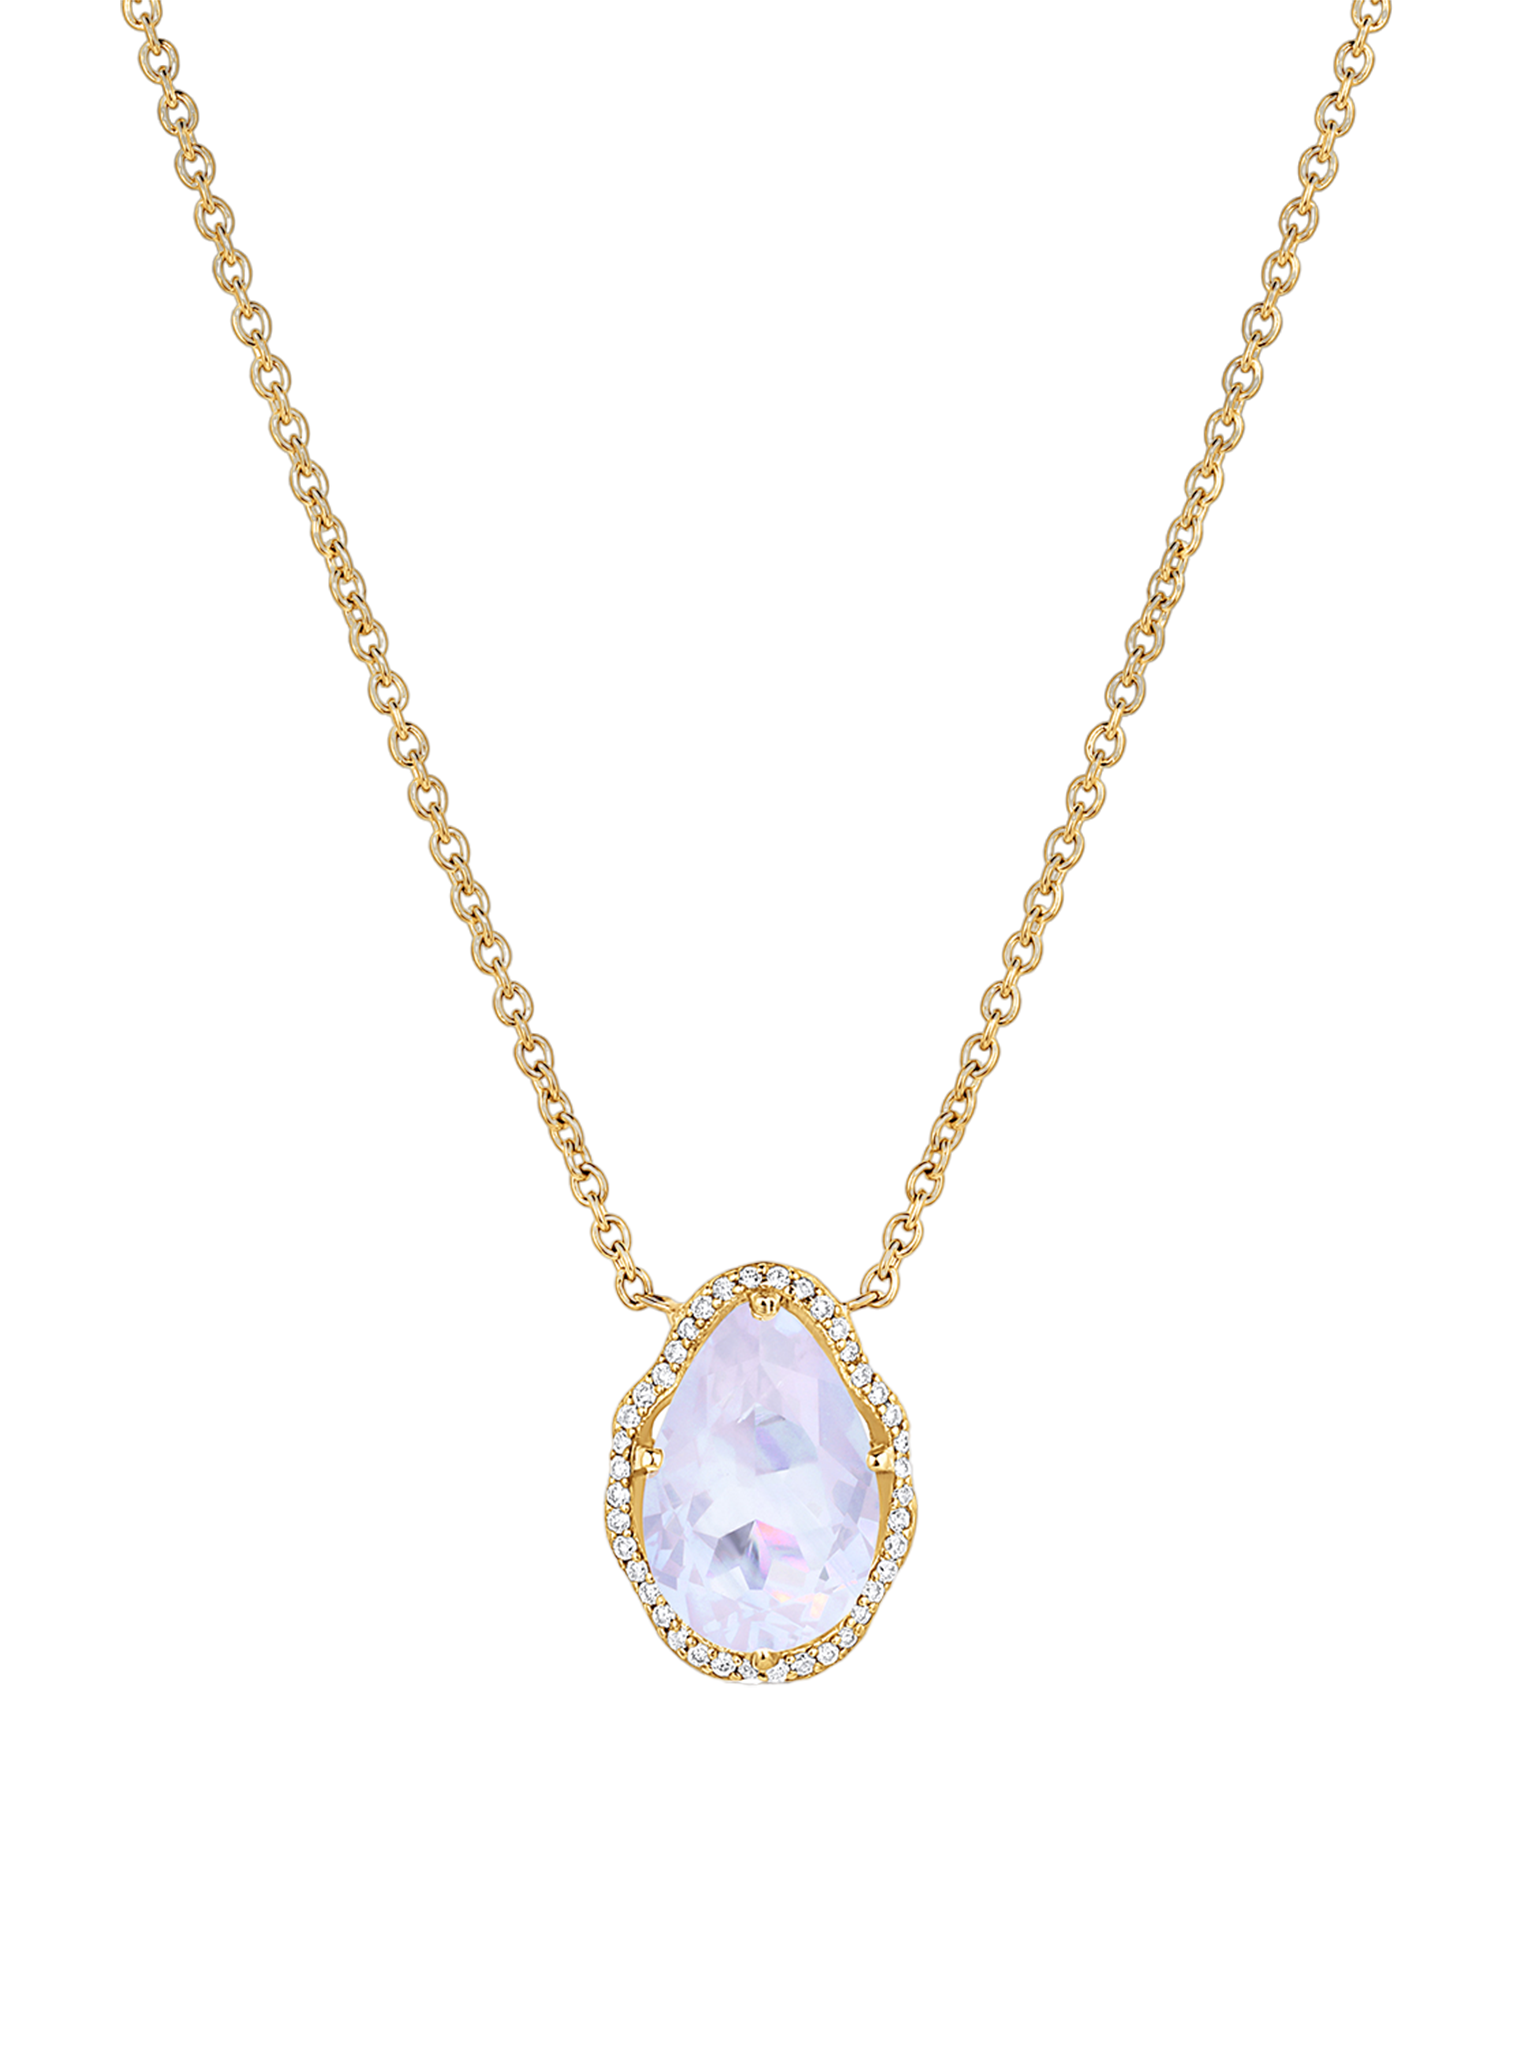 Glow necklace lavender quartz with diamonds